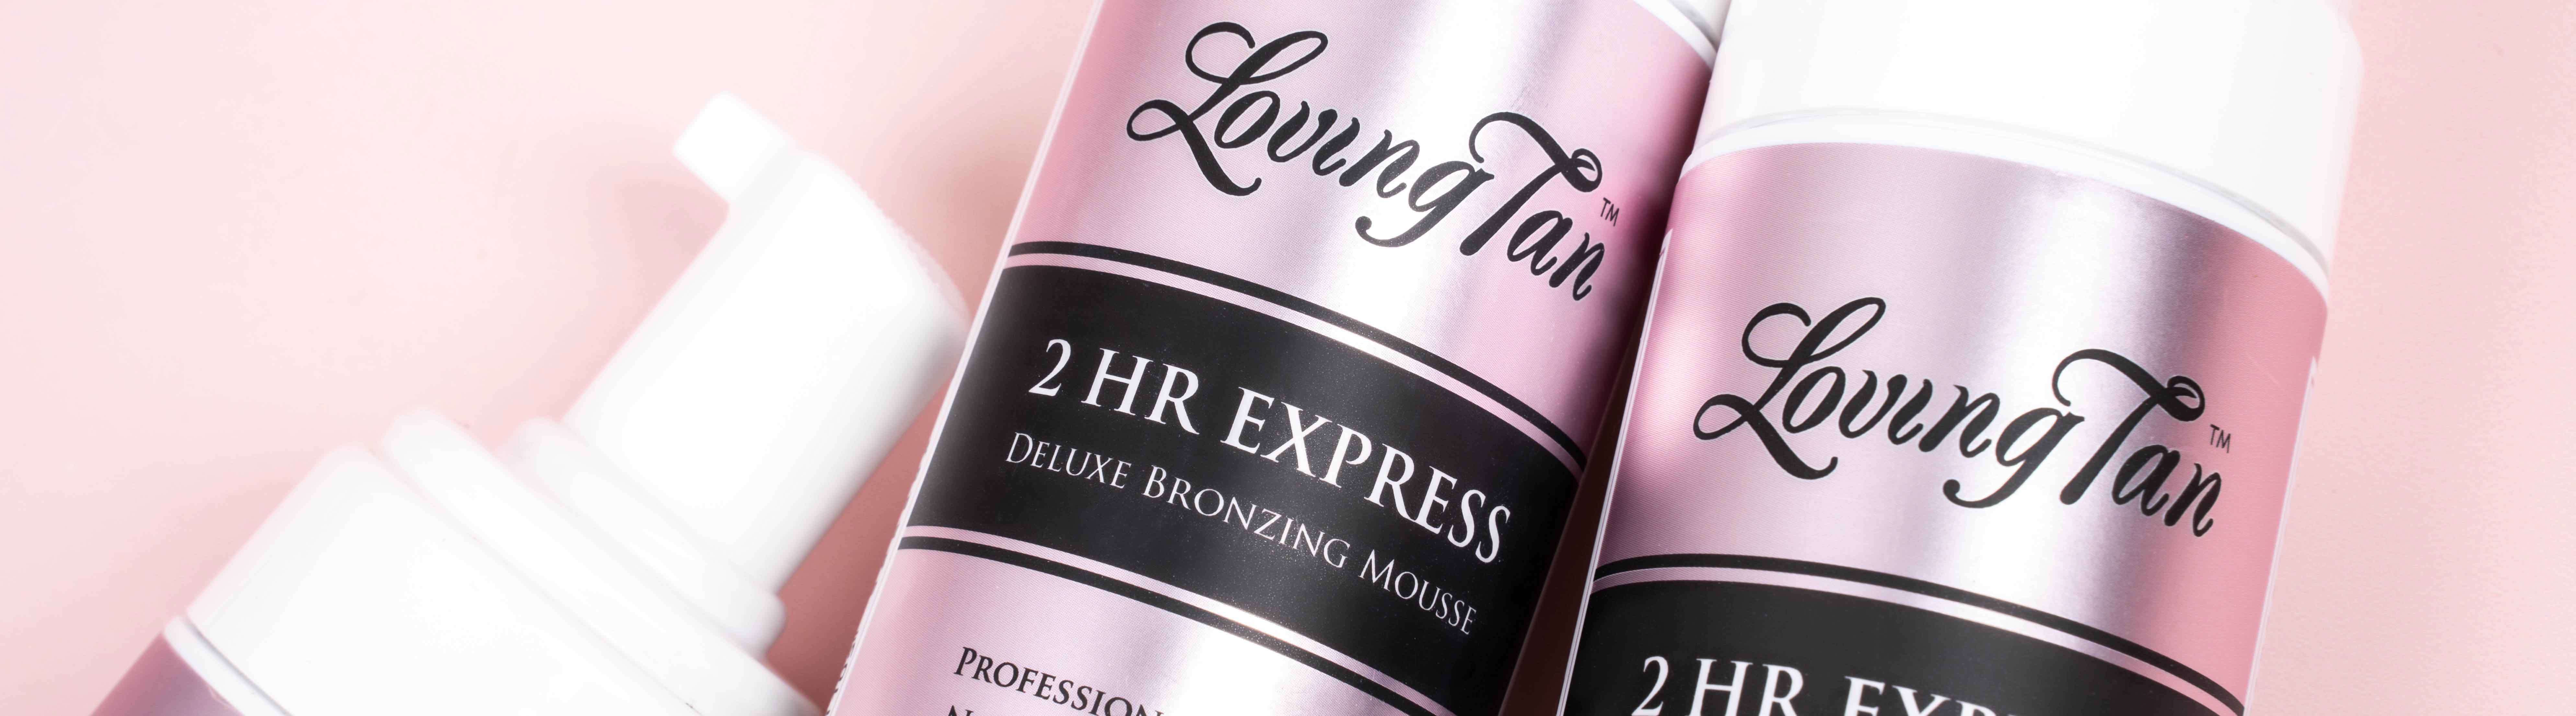 2 HR Express Medium  Official Loving Tan®